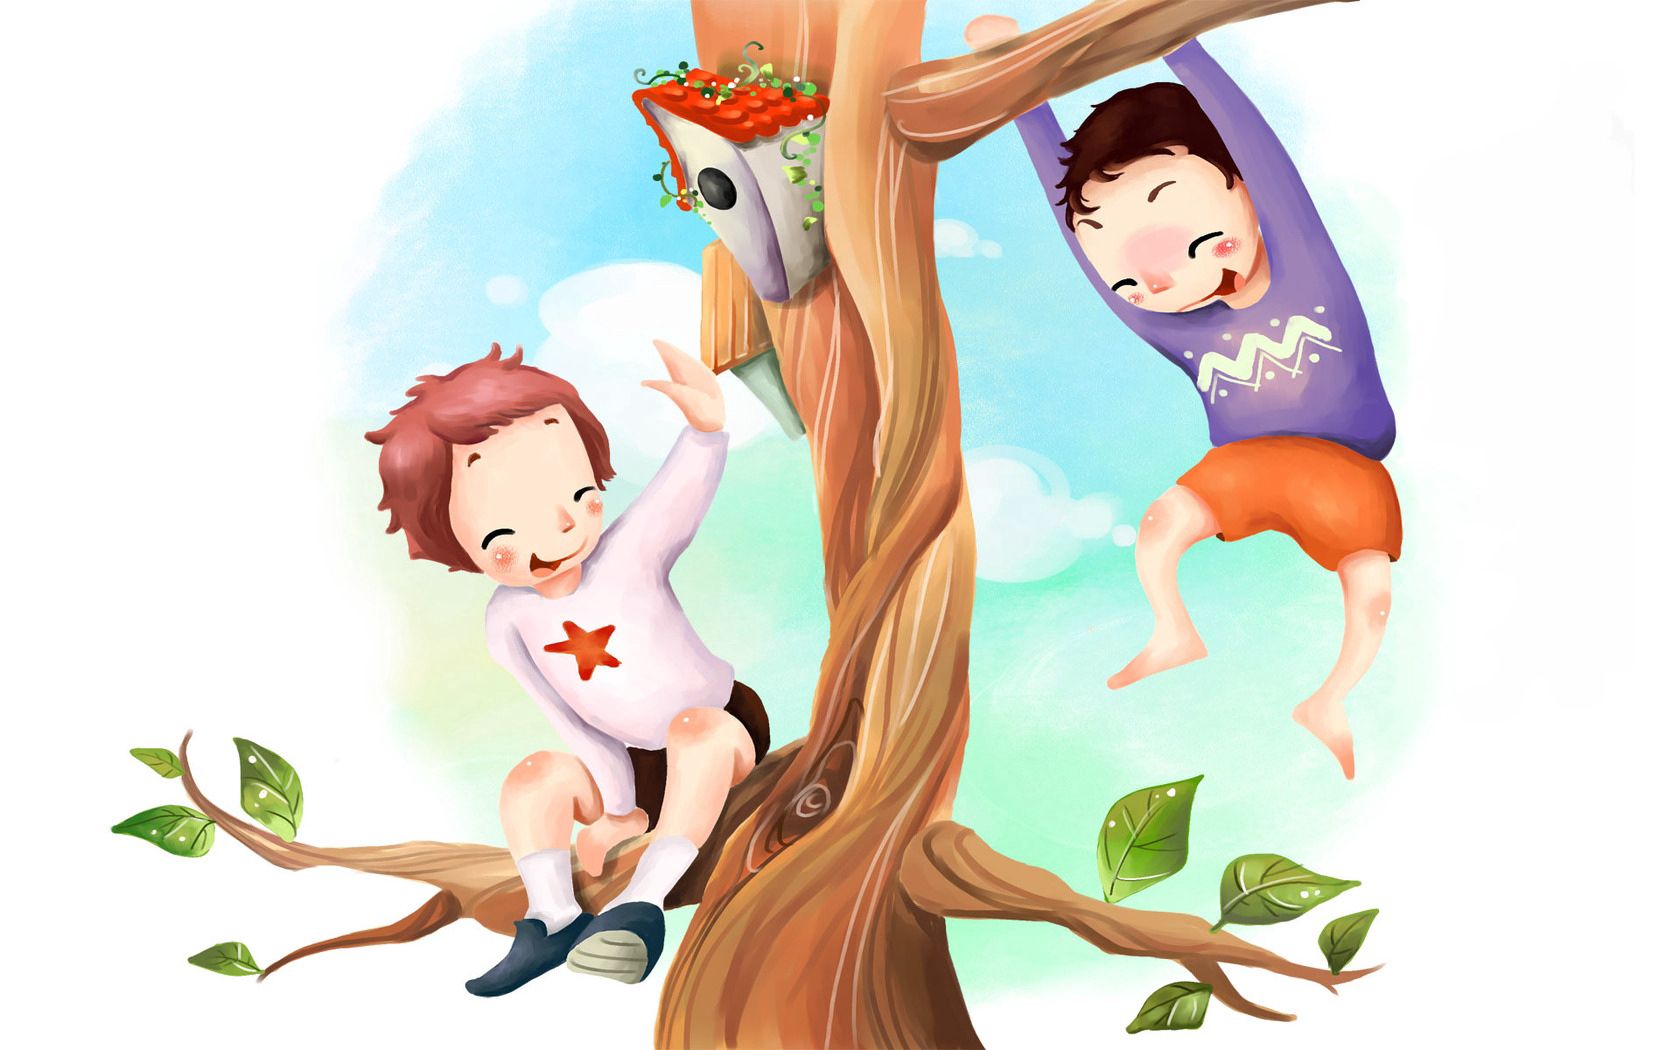 Children foliage, tree, fun, birdhouse Free Stock Photos